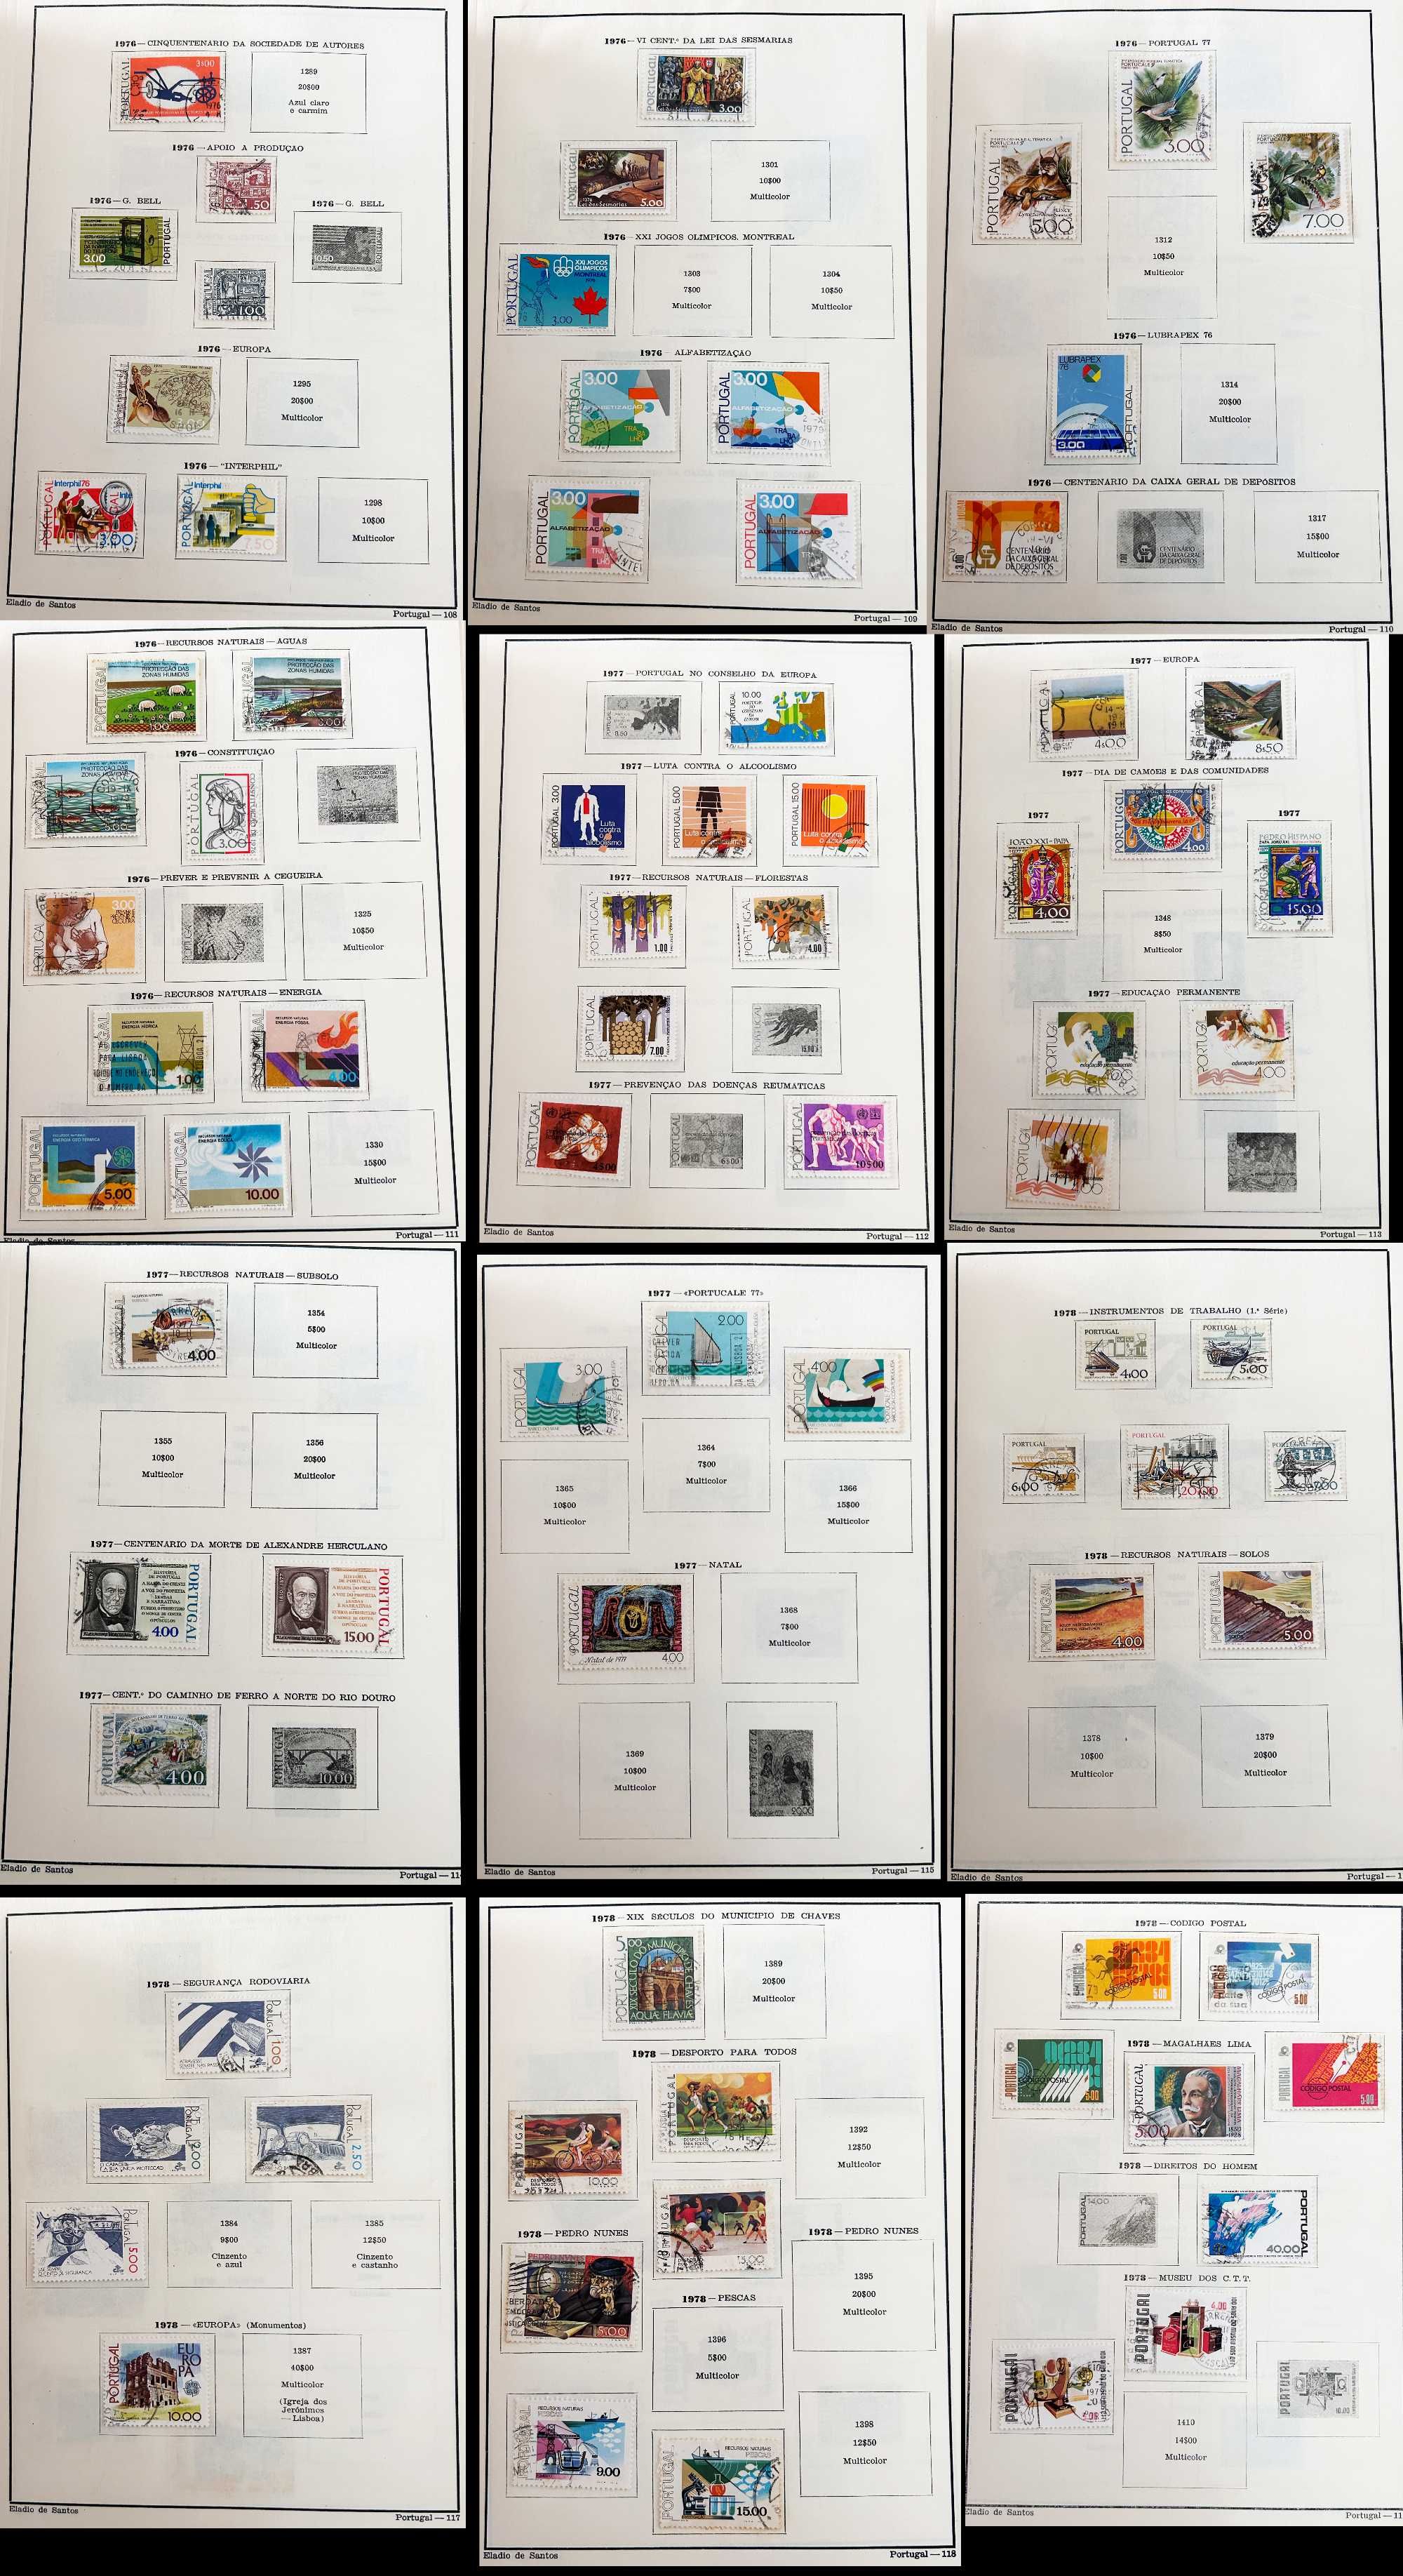 Filatelia: coleção de mais de 500 selos